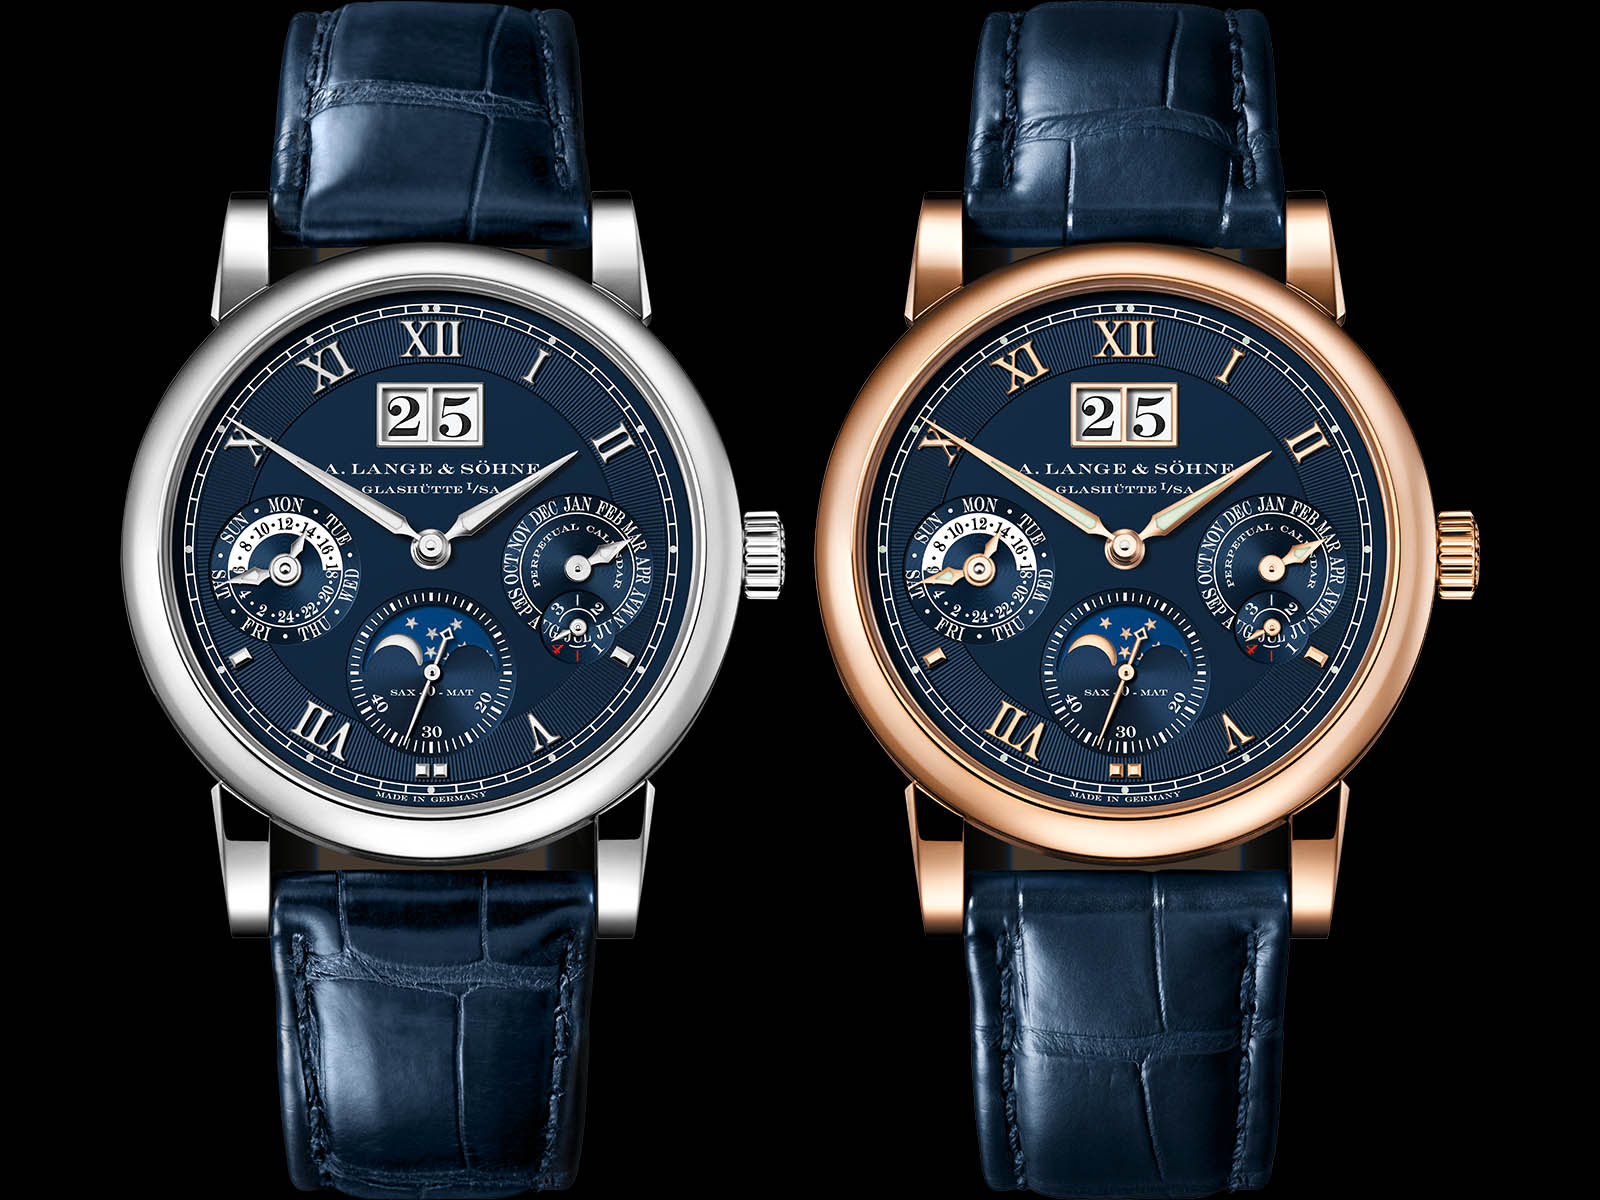 Thu mua đồng hồ A. Lange & Sohne chính hãng giá cao tại nhà